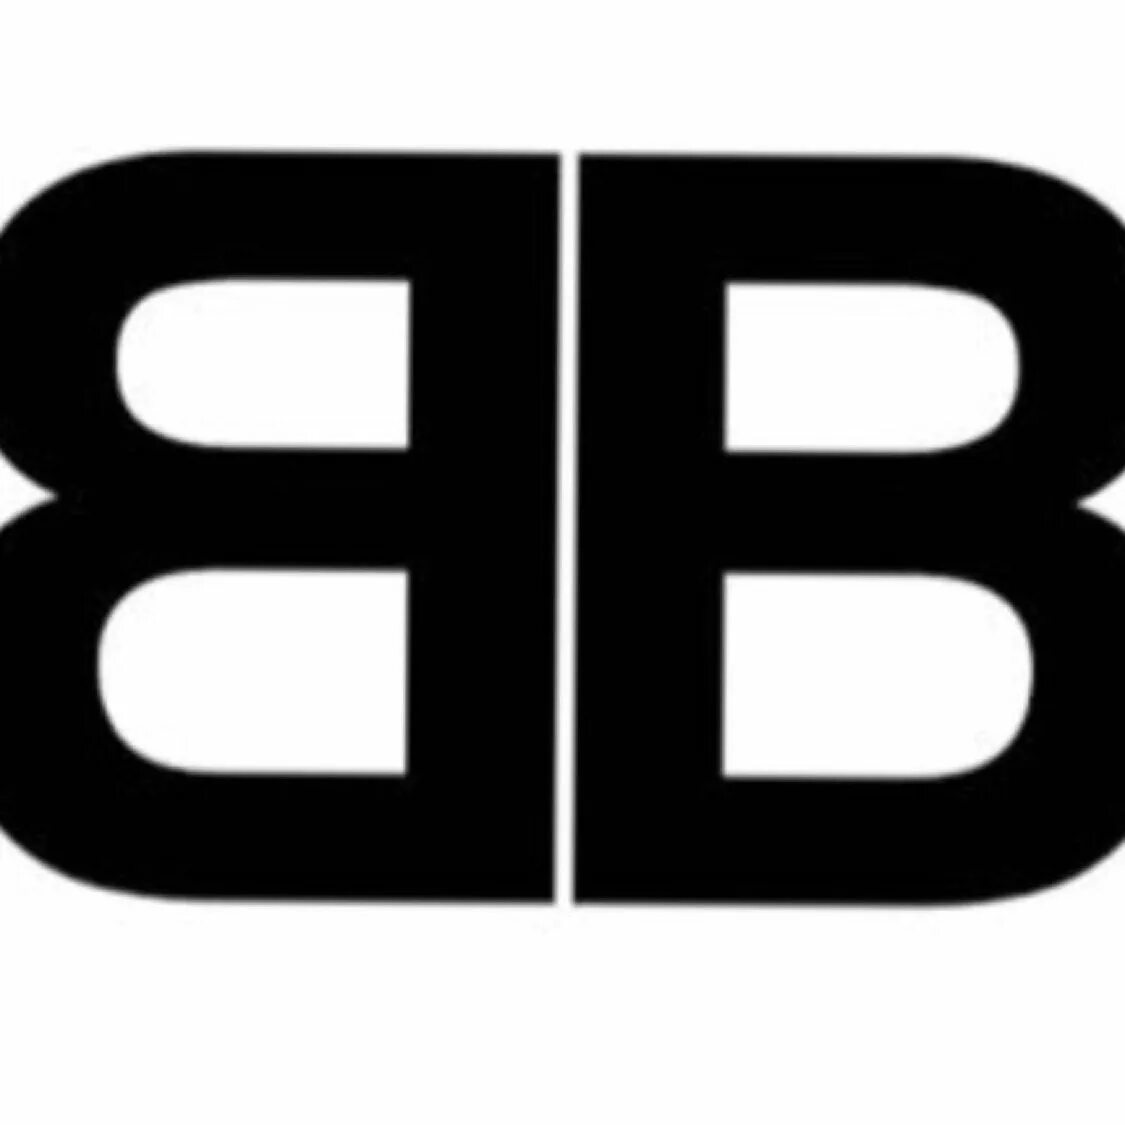 Марка одежды ВВ. Фирма BB. BB лого. Бренд с буквами BB. Две бб